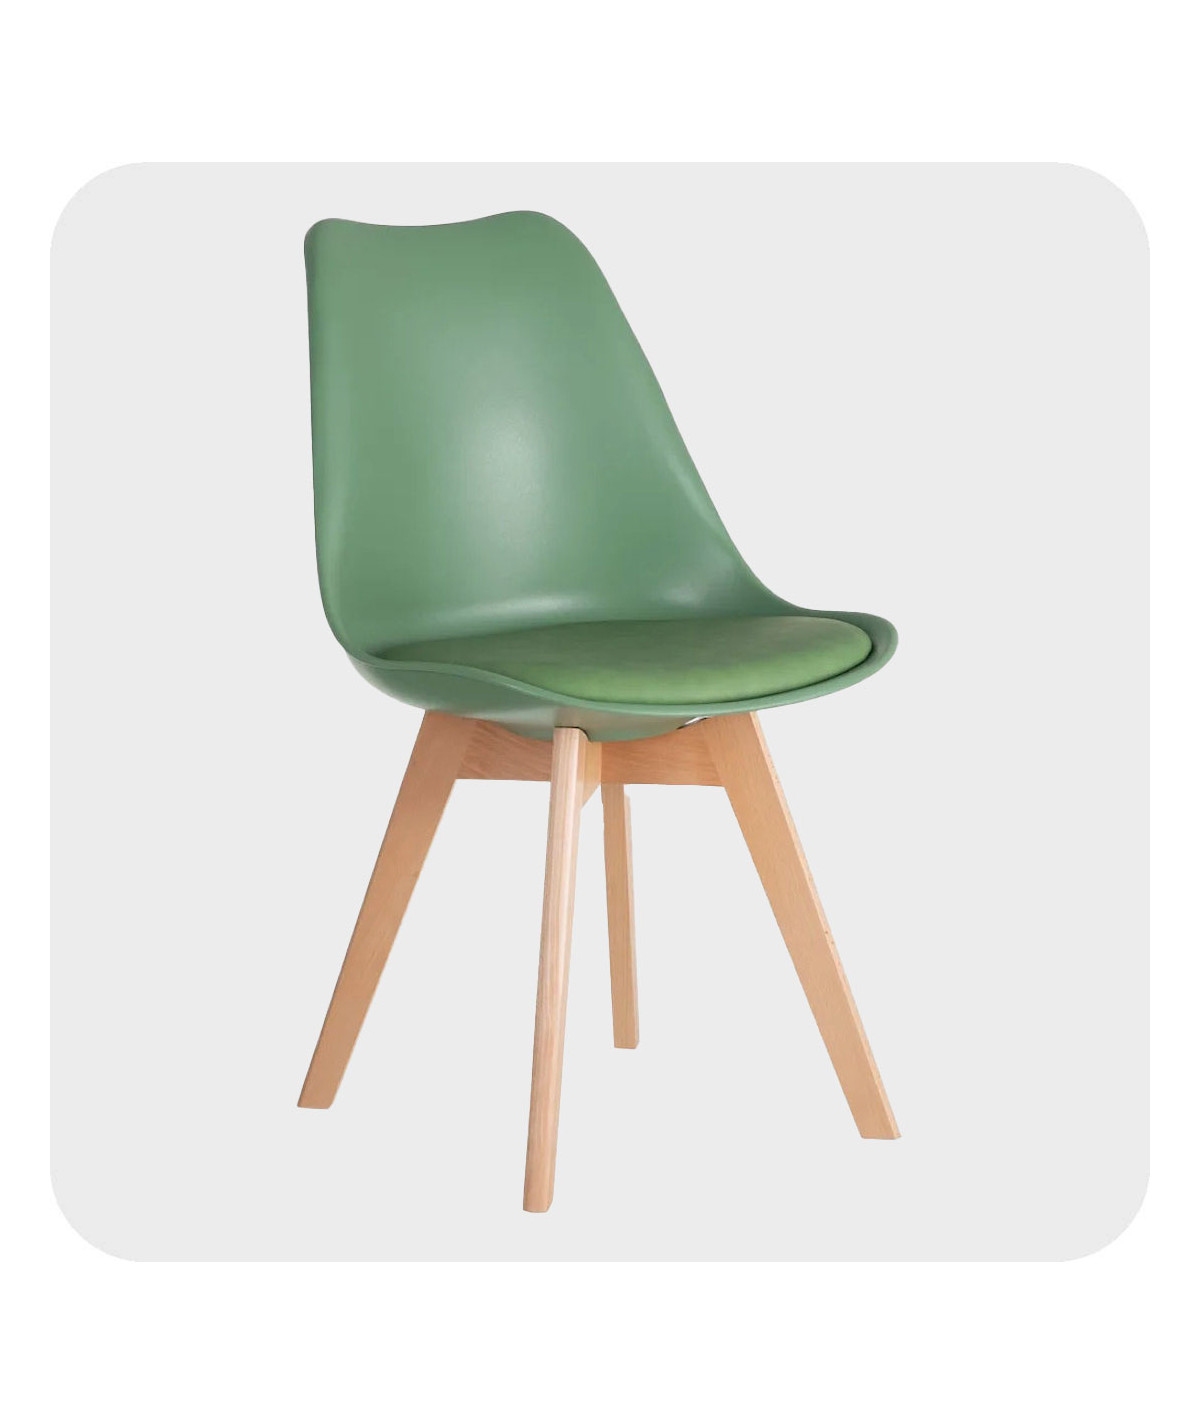 Chaise scandinave vert menthe 49x43x84cm (Lot de 4) |YESDEKO